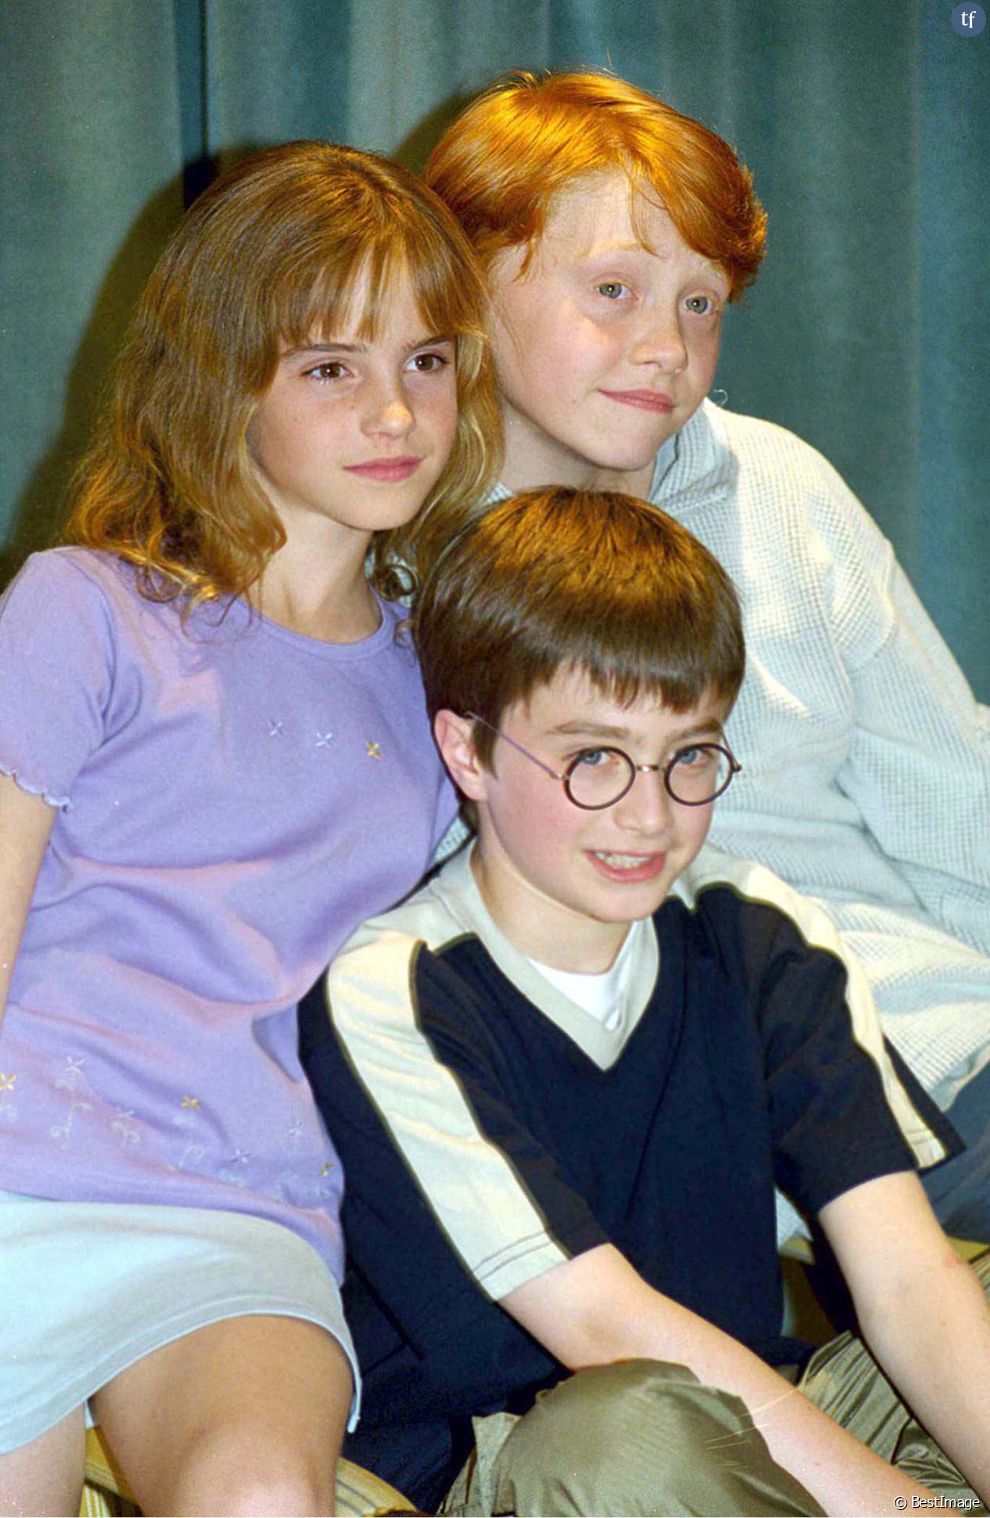  Emma Watson, Daniel Radcliffe, Rupert Grint à une conférence de presse à Londres le 24 novembre 2000. 